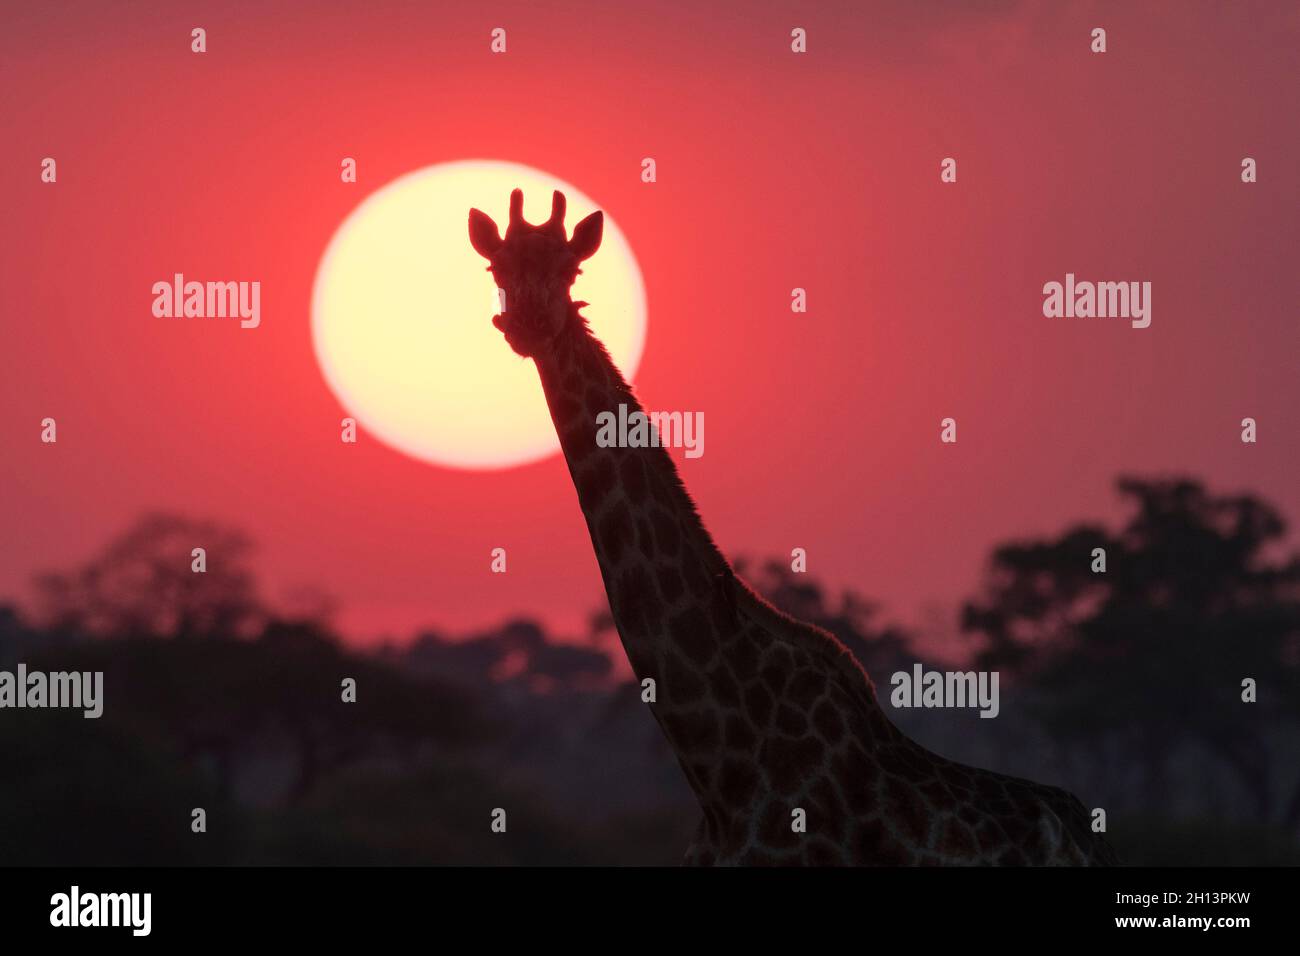 A giraffe, Giraffa camelopardalis, Savuti, at sunset. Stock Photo